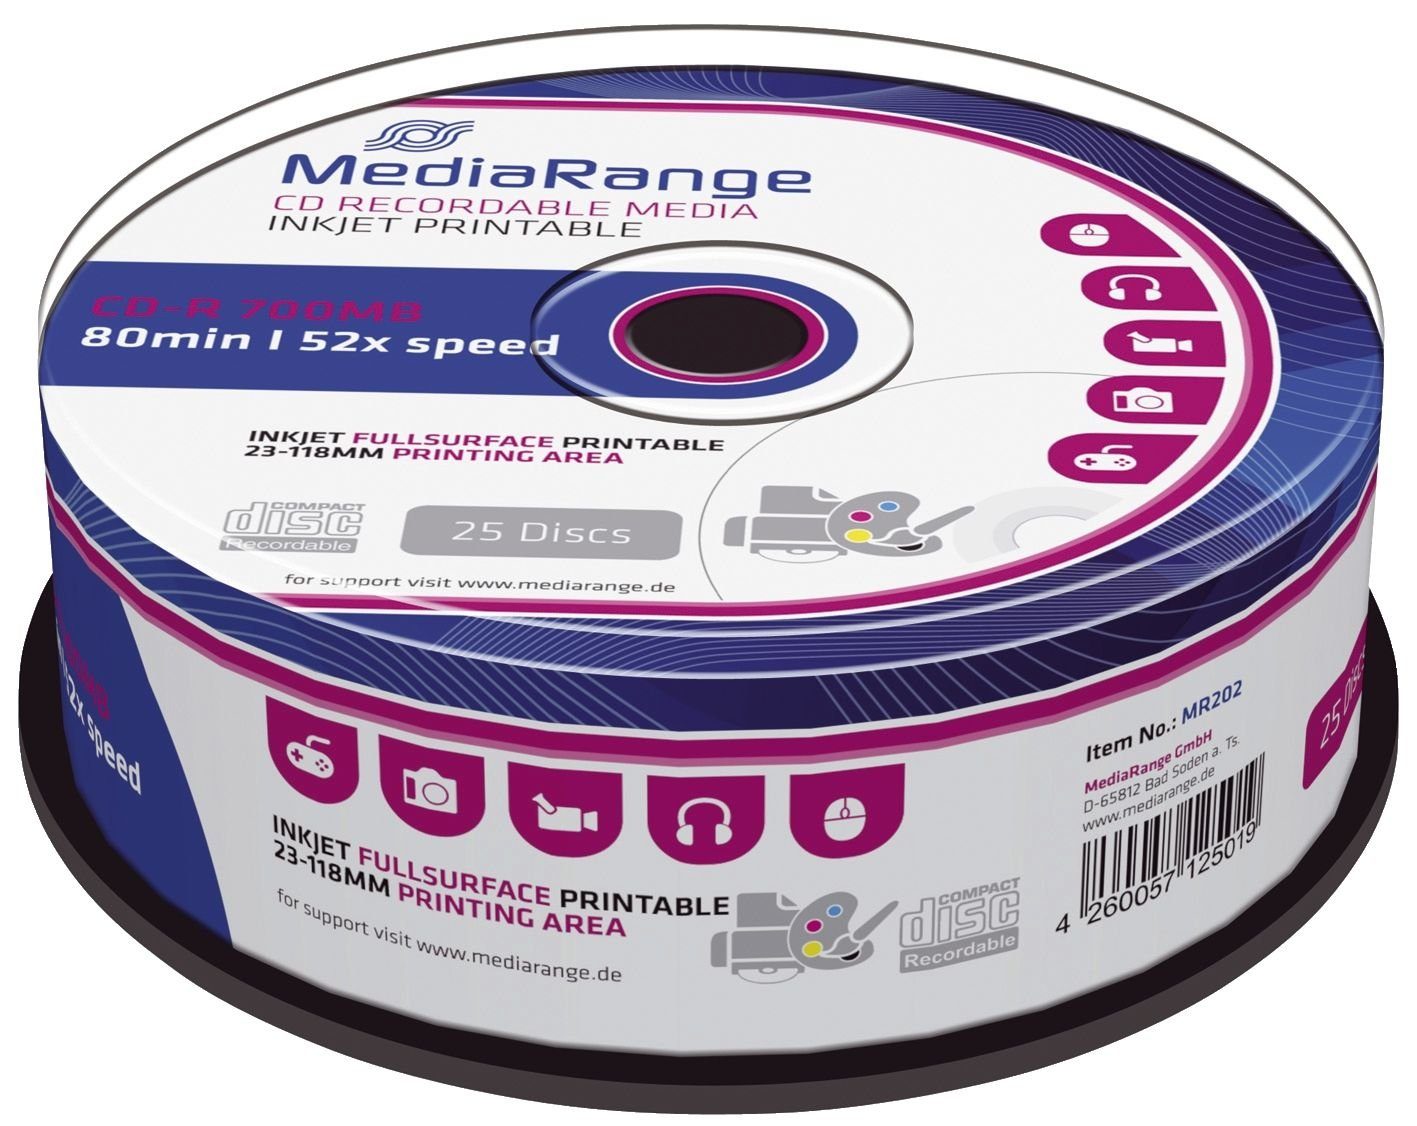 Mediarange Handgelenkstütze MediaRange CD-R 700MB 25pcs Spindel 52x Inkjet Printable